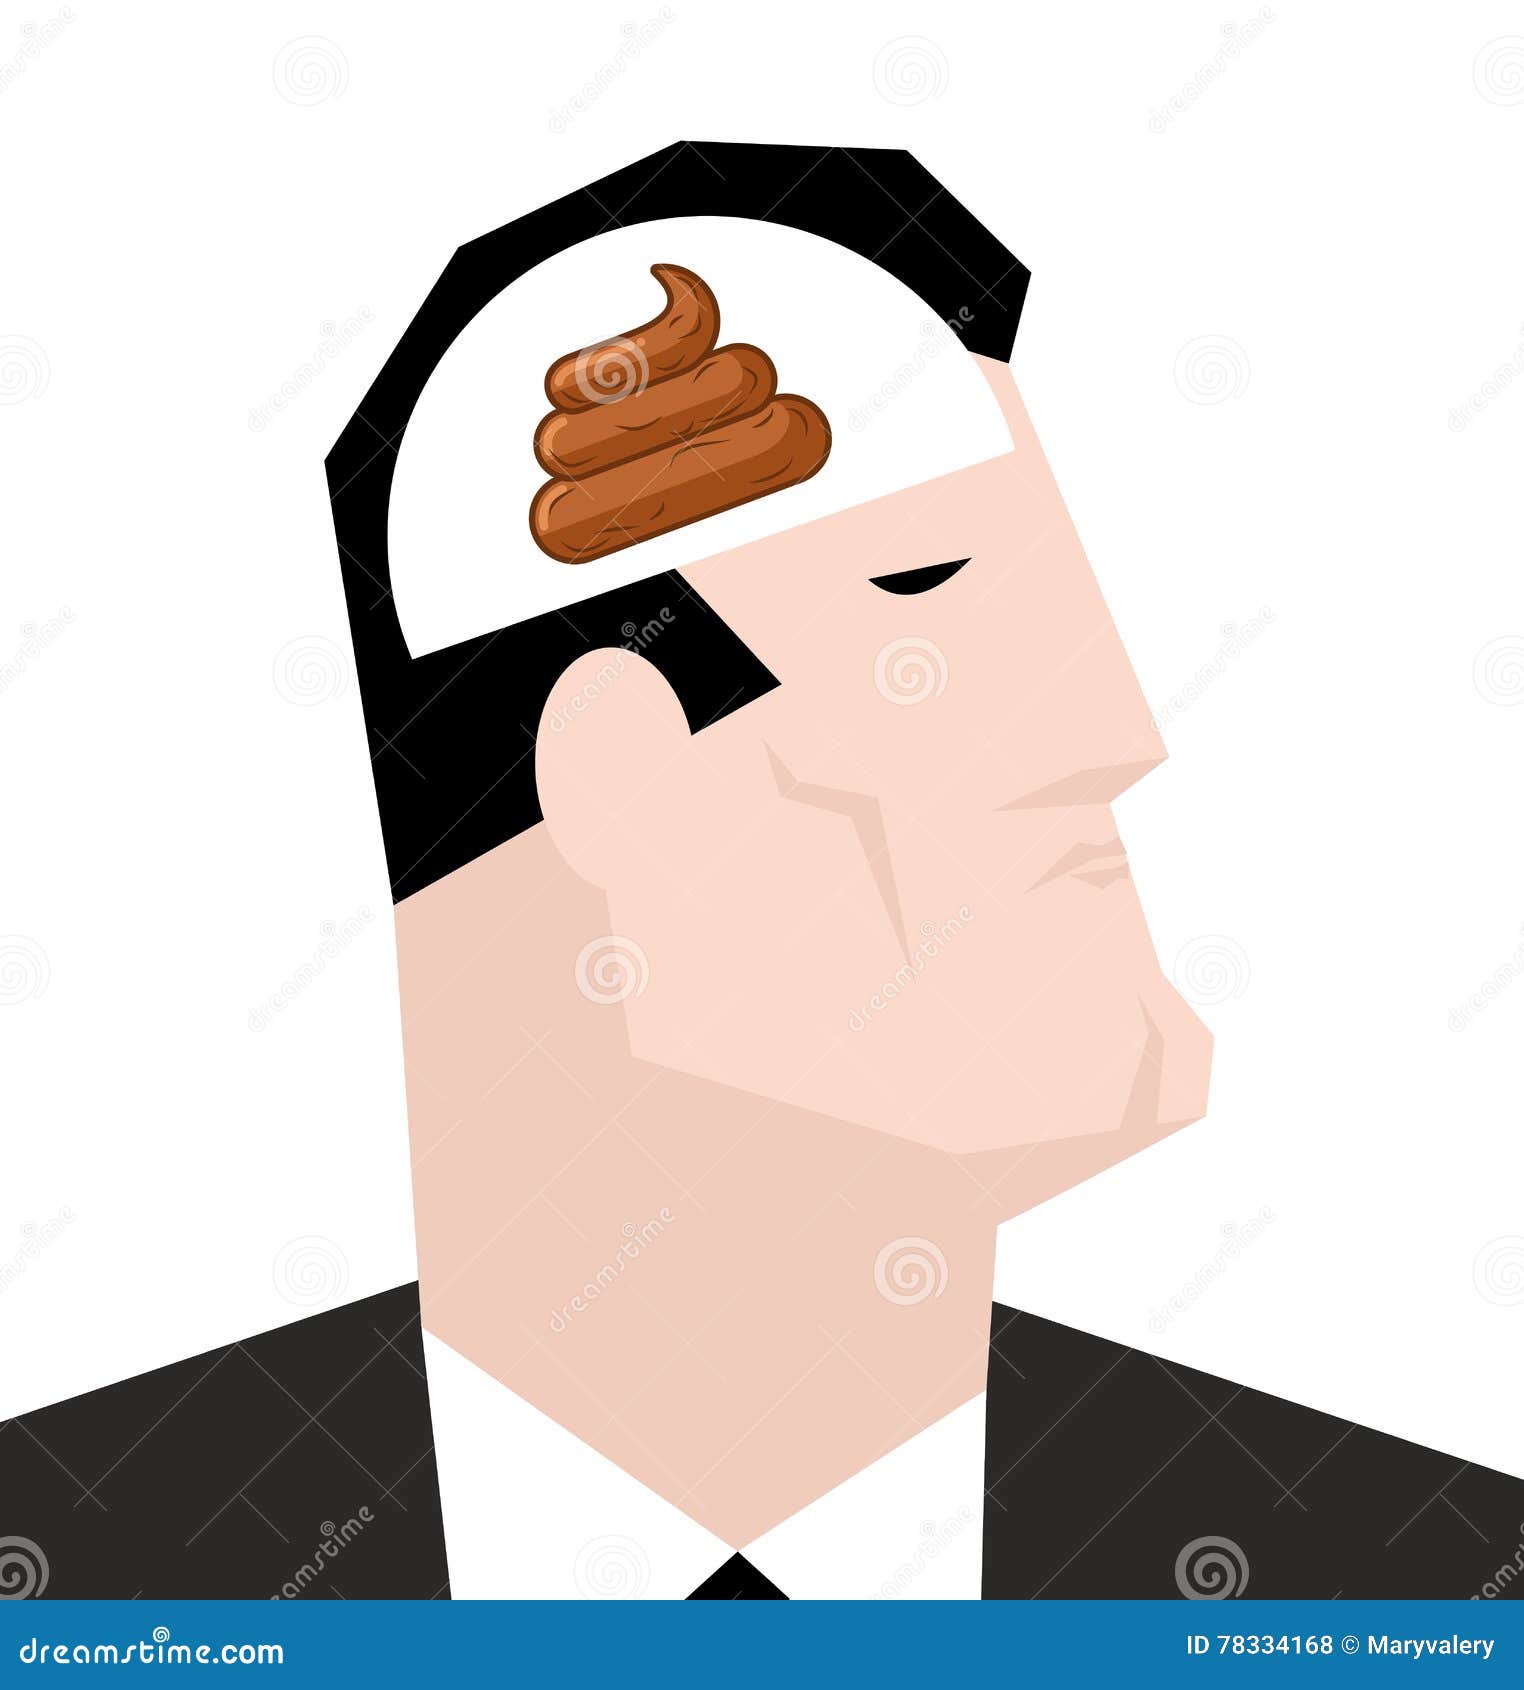 Голова другим словом. Человек с пустой головой. Пустая голова. Иллюстрация человек с пустой головой.